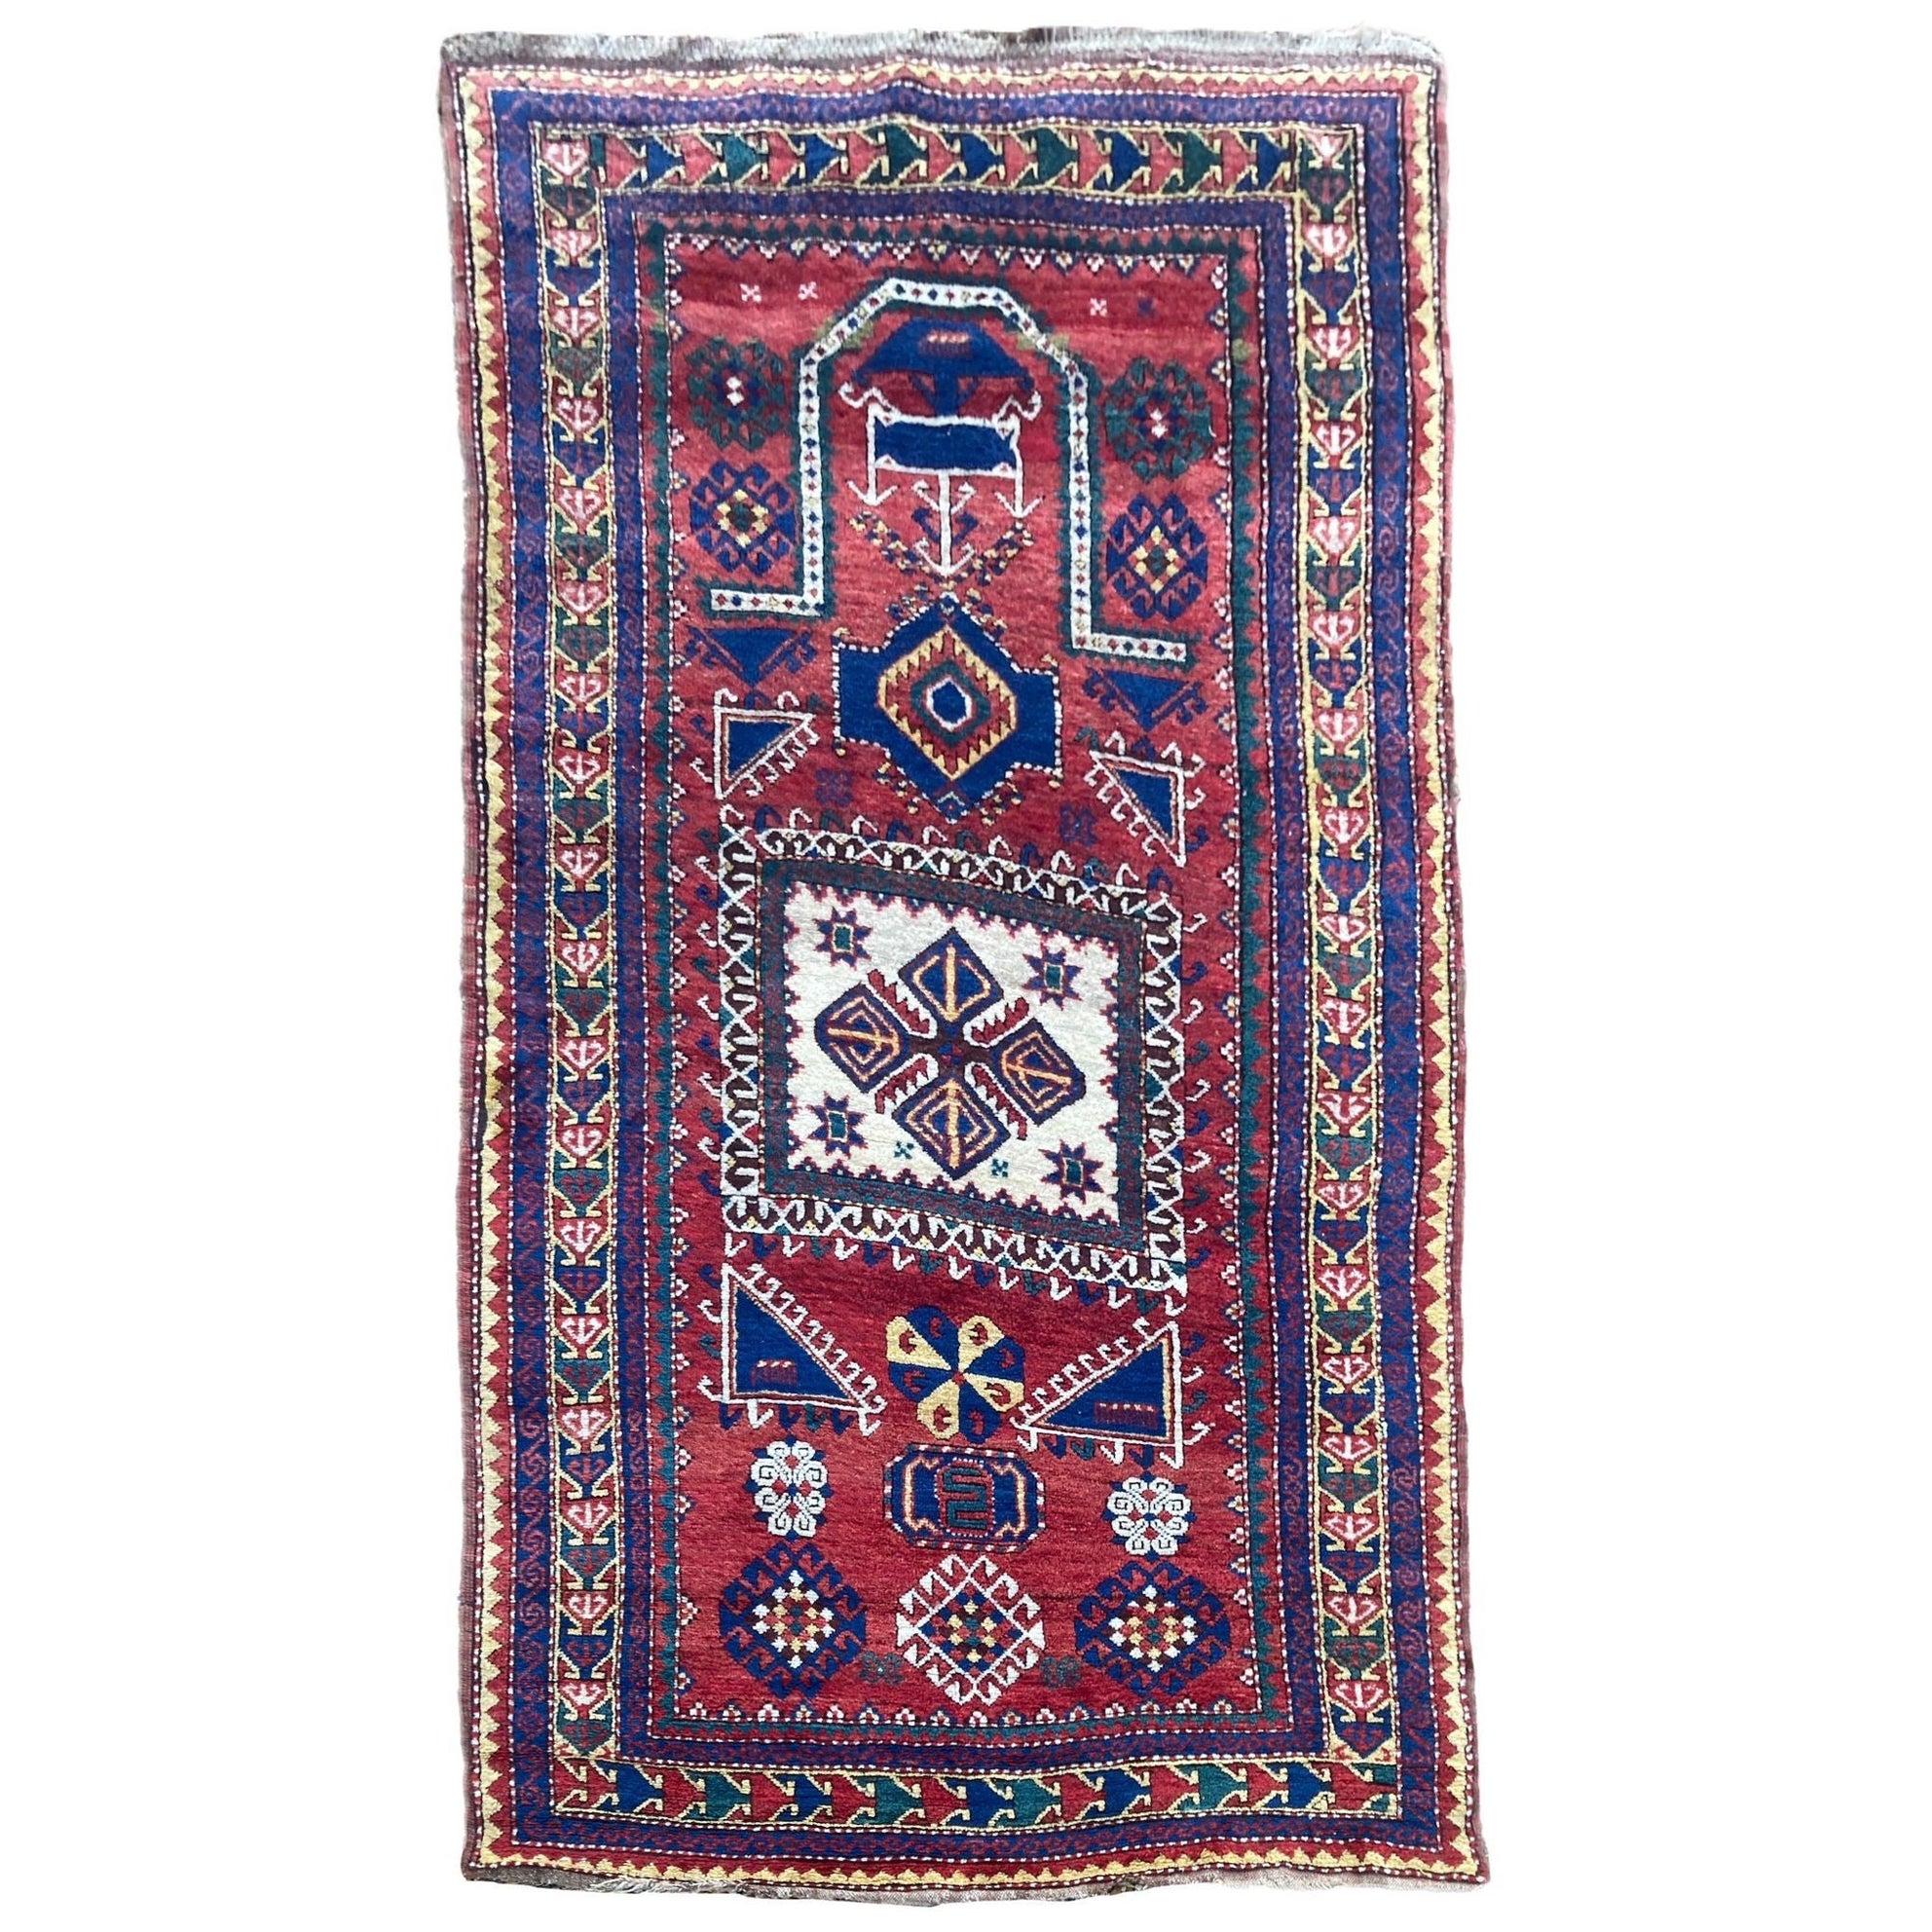 Antique Caucasian Fachralo Kazak Prayer Rug 2.48m x 1.30m For Sale